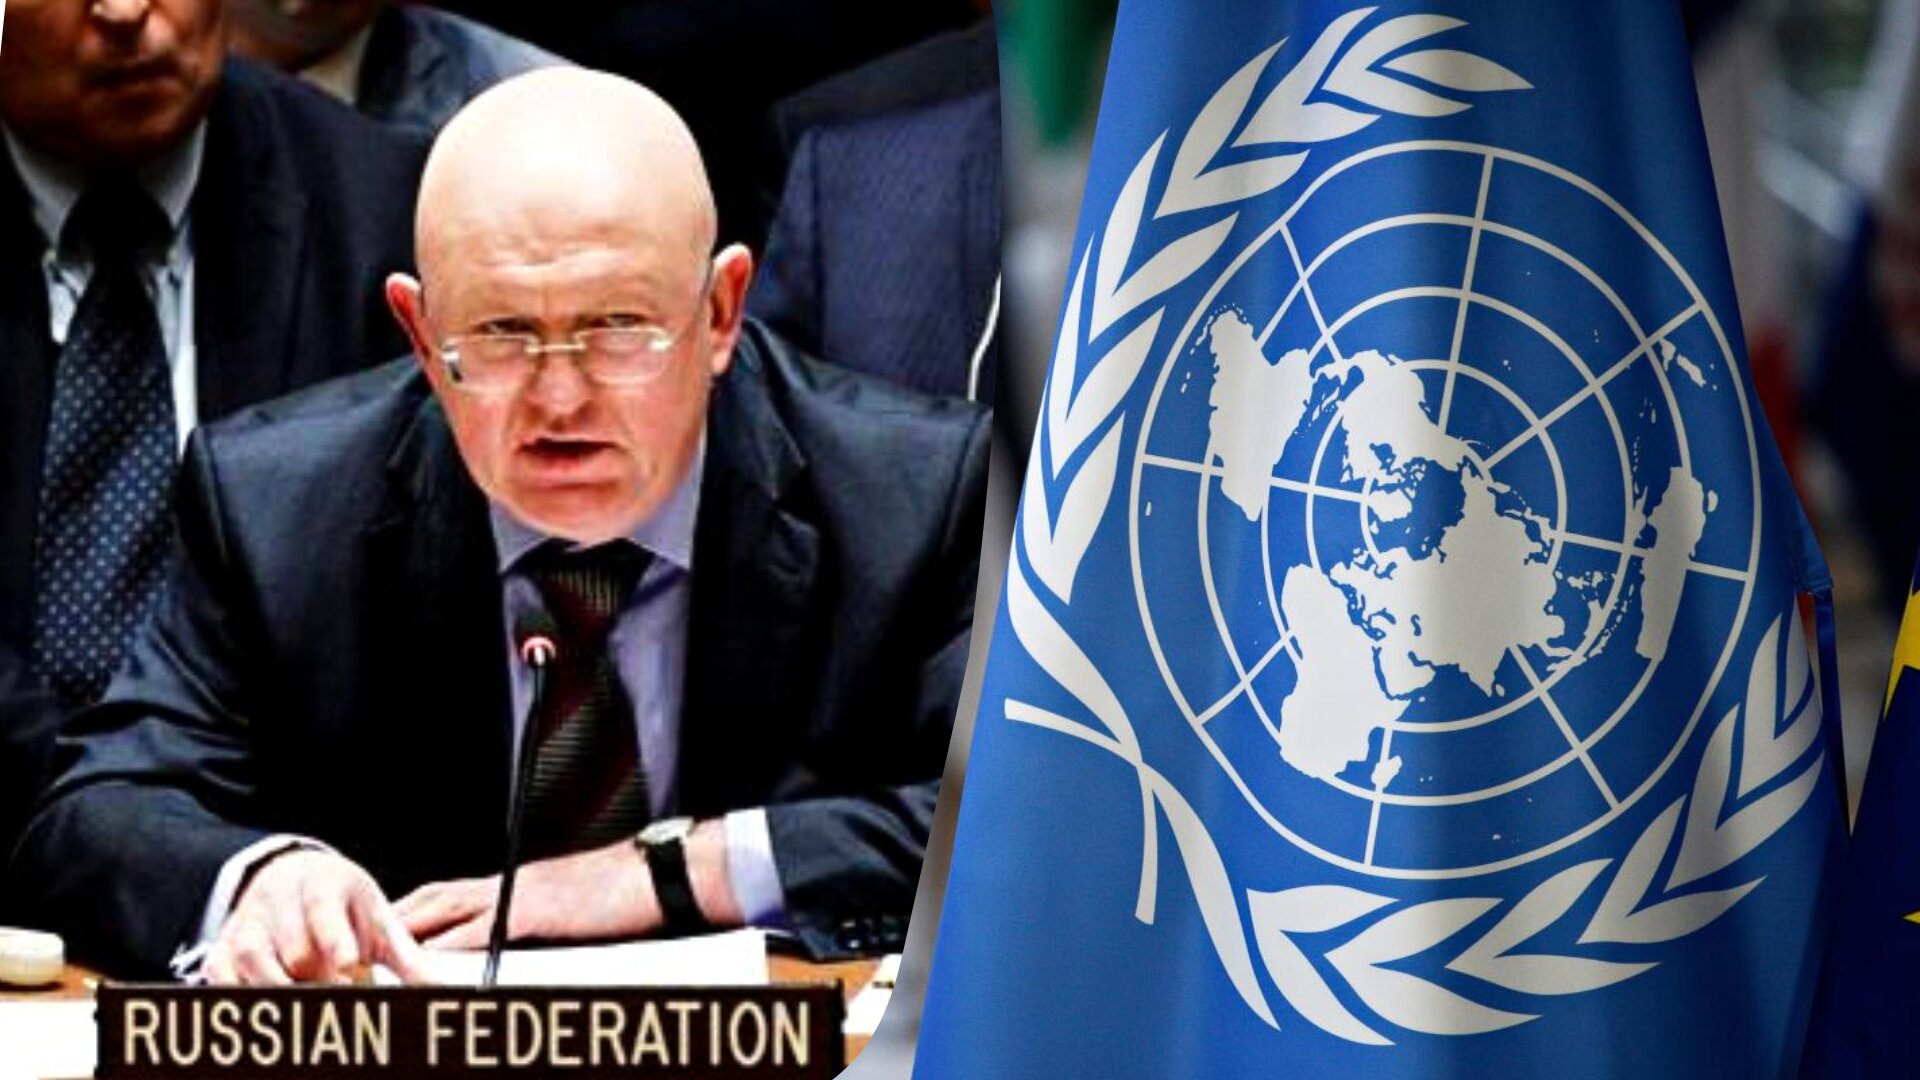 Російська Федерація ніколи не набувала статусу учасника ООН відповідно до чинного Статуту, процедурних правил Генеральної Асамблеї та Ради Безпеки ООН.

